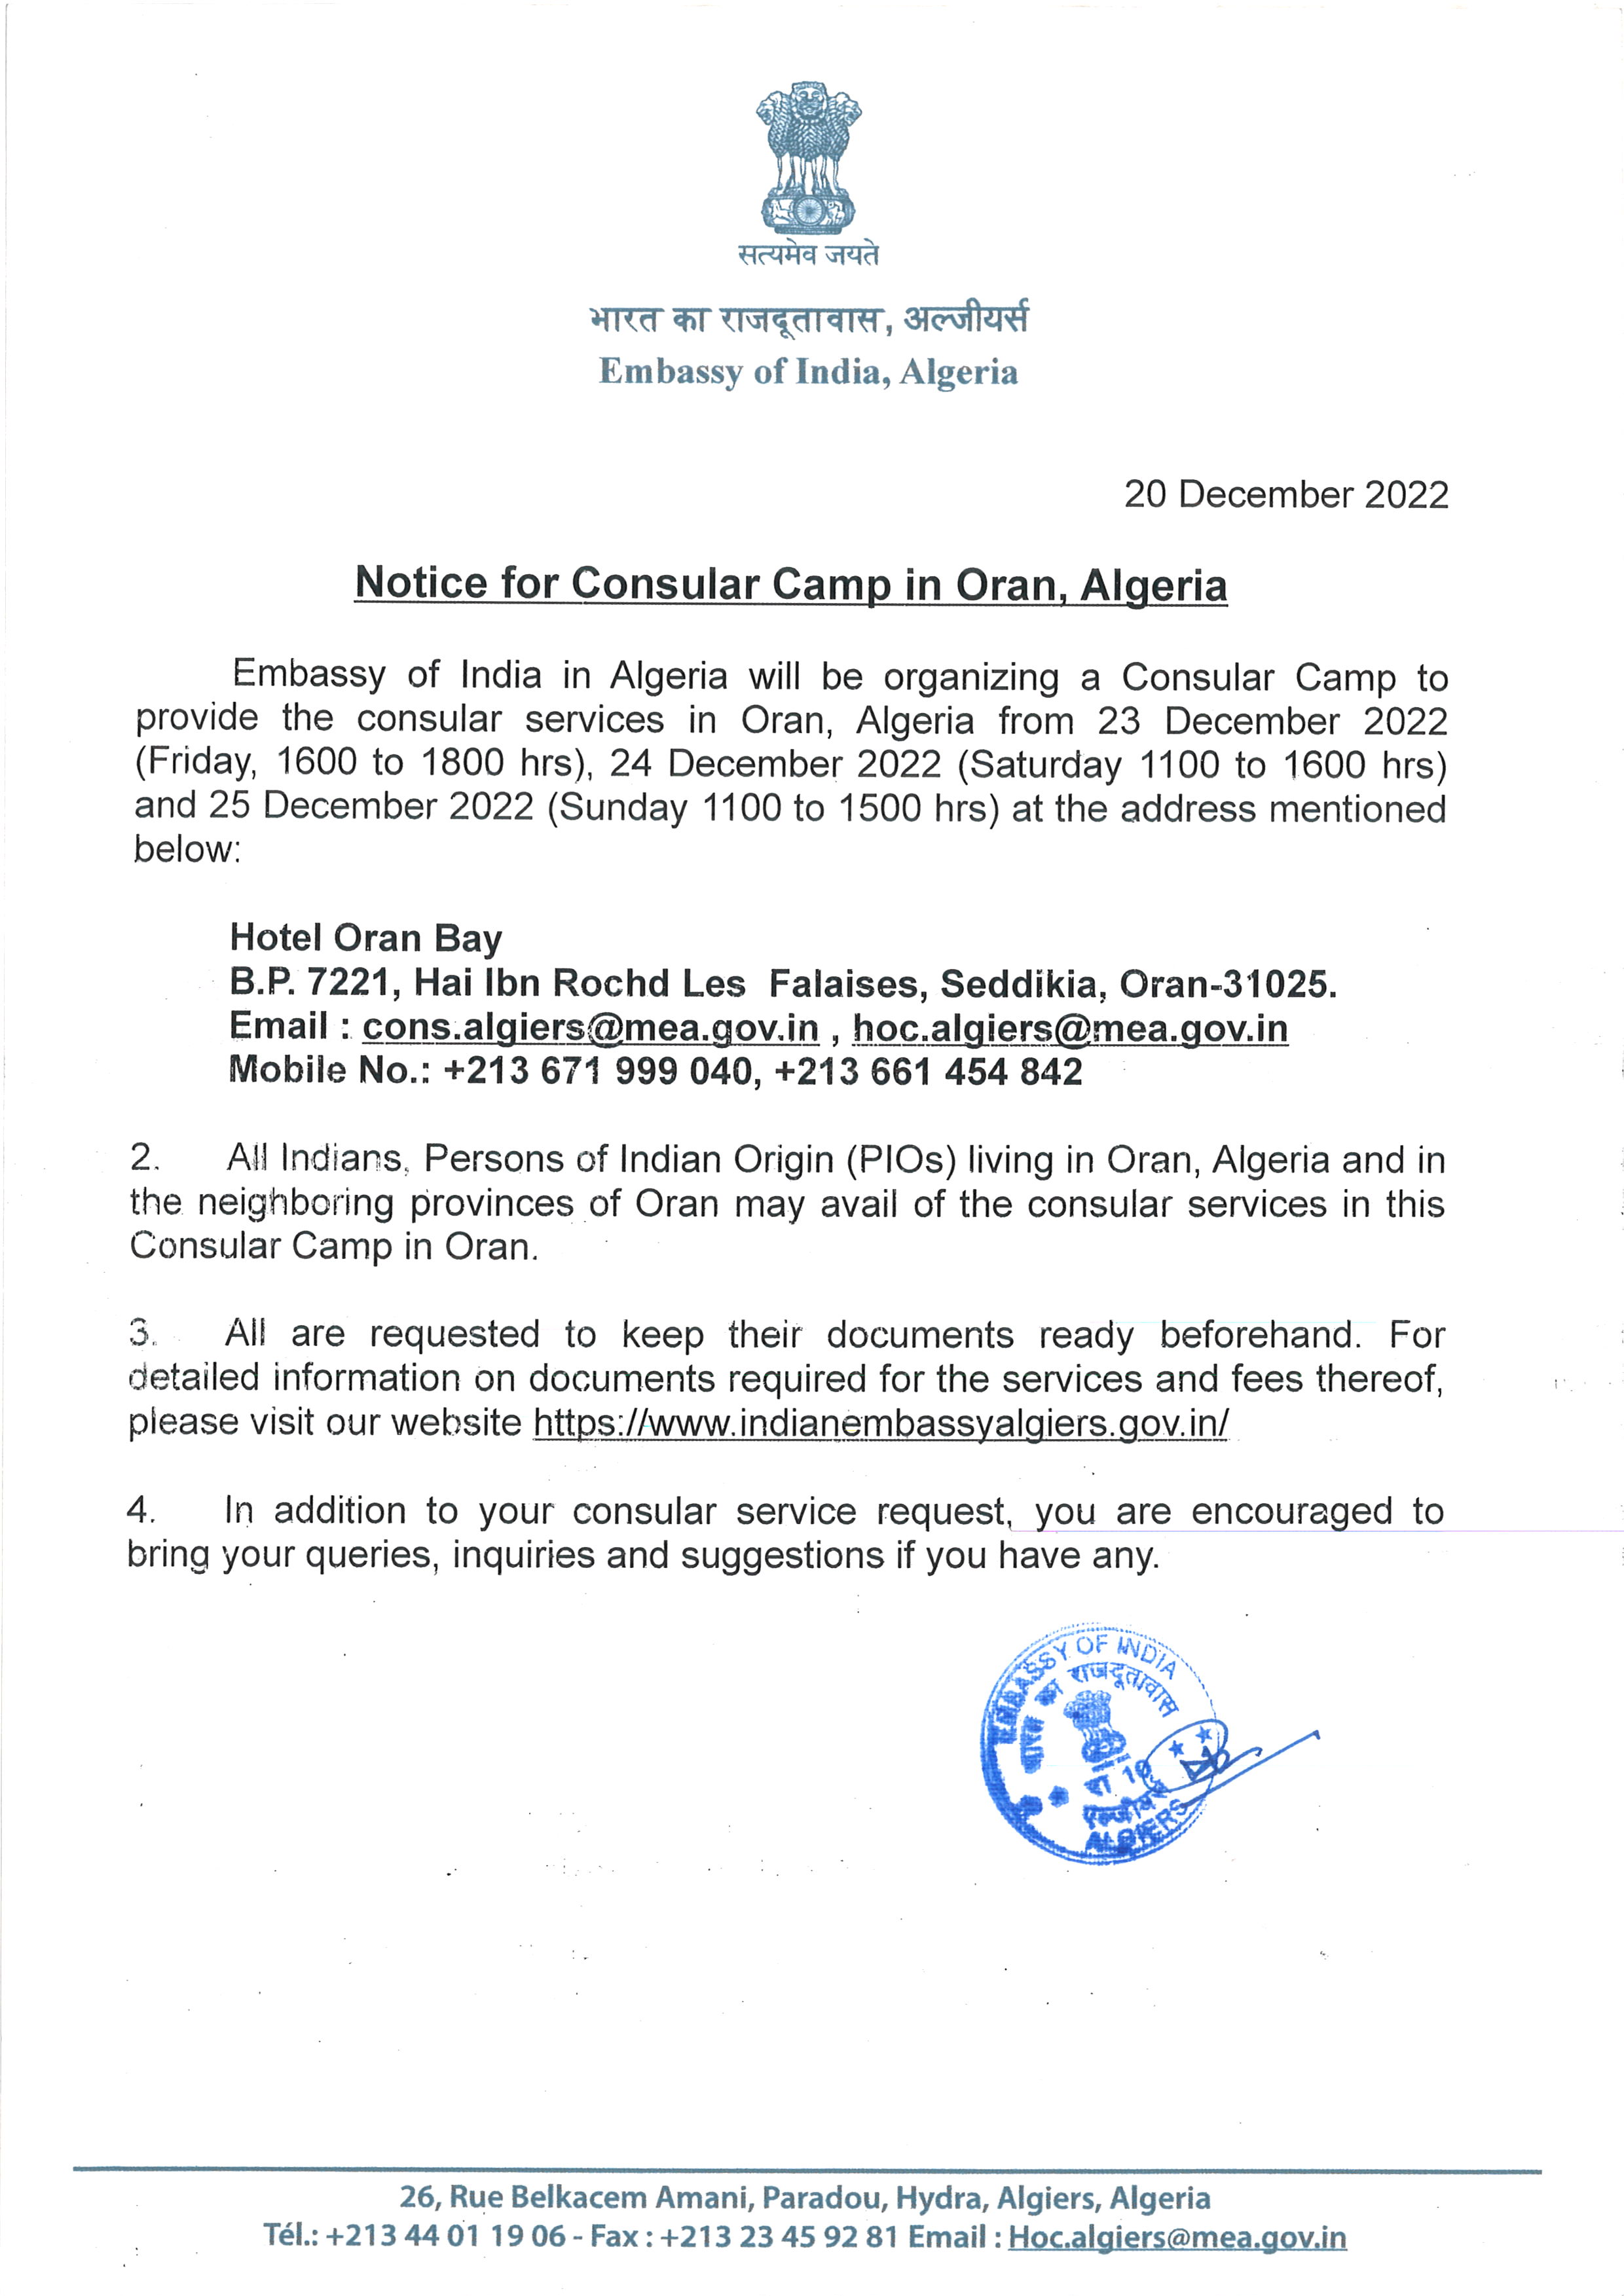  Notice for Consular Camp in Oran, Algeria (23-25 December 2022)